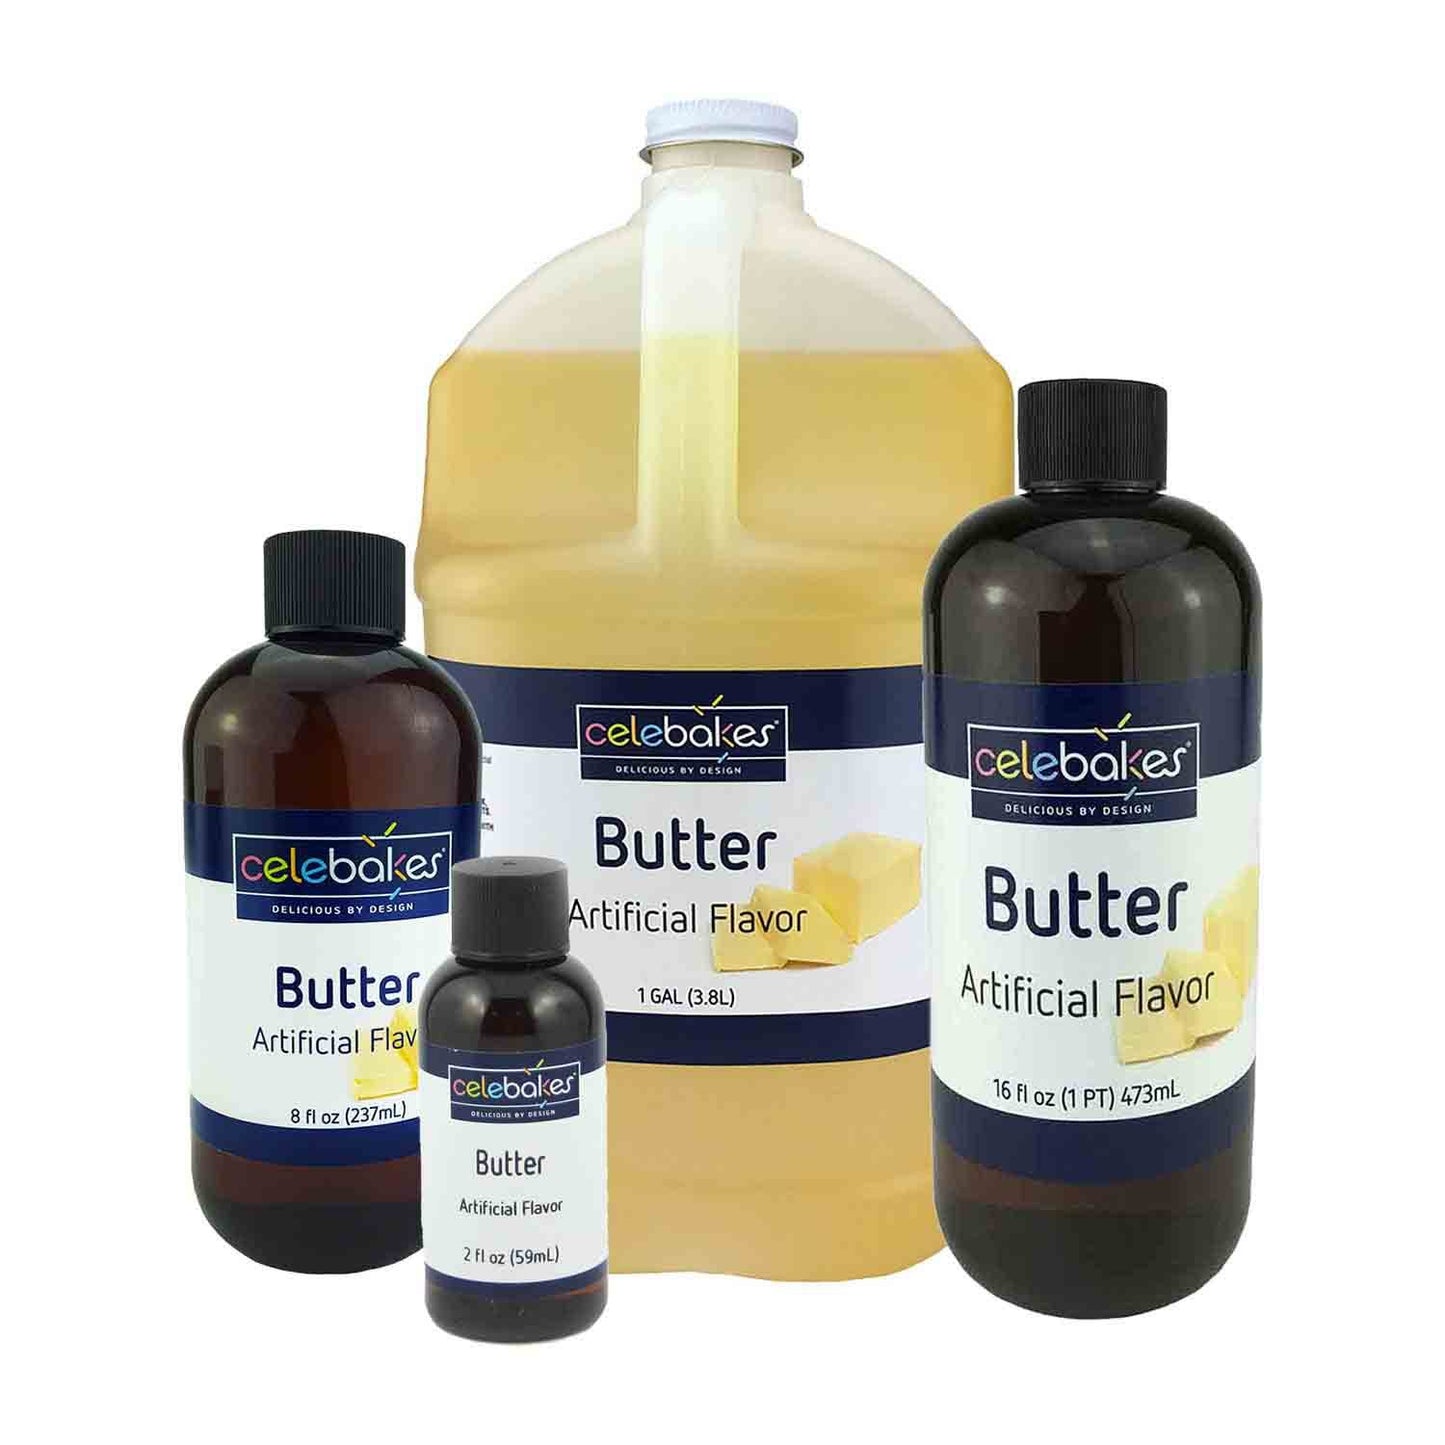 Celebakes Butter Artificial Flavor 8oz